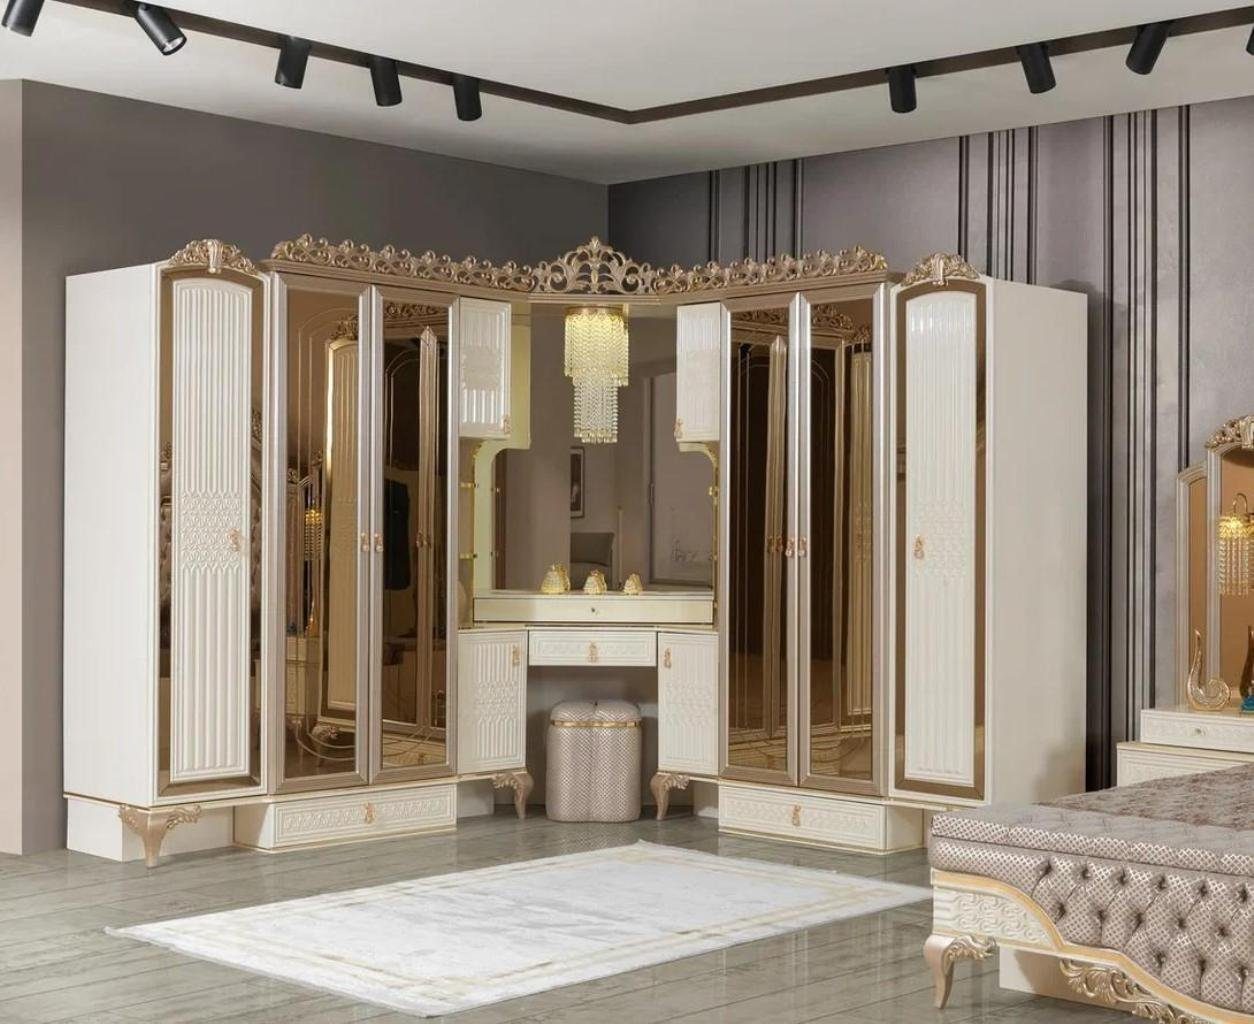 JVmoebel Eckkleiderschrank Eckschrank Design Luxus Wohnzimmer Möbel Holz Eckschrank Modern (1-St., 1x Eckkleiderschrank) Made in Europa | Eckkleiderschränke